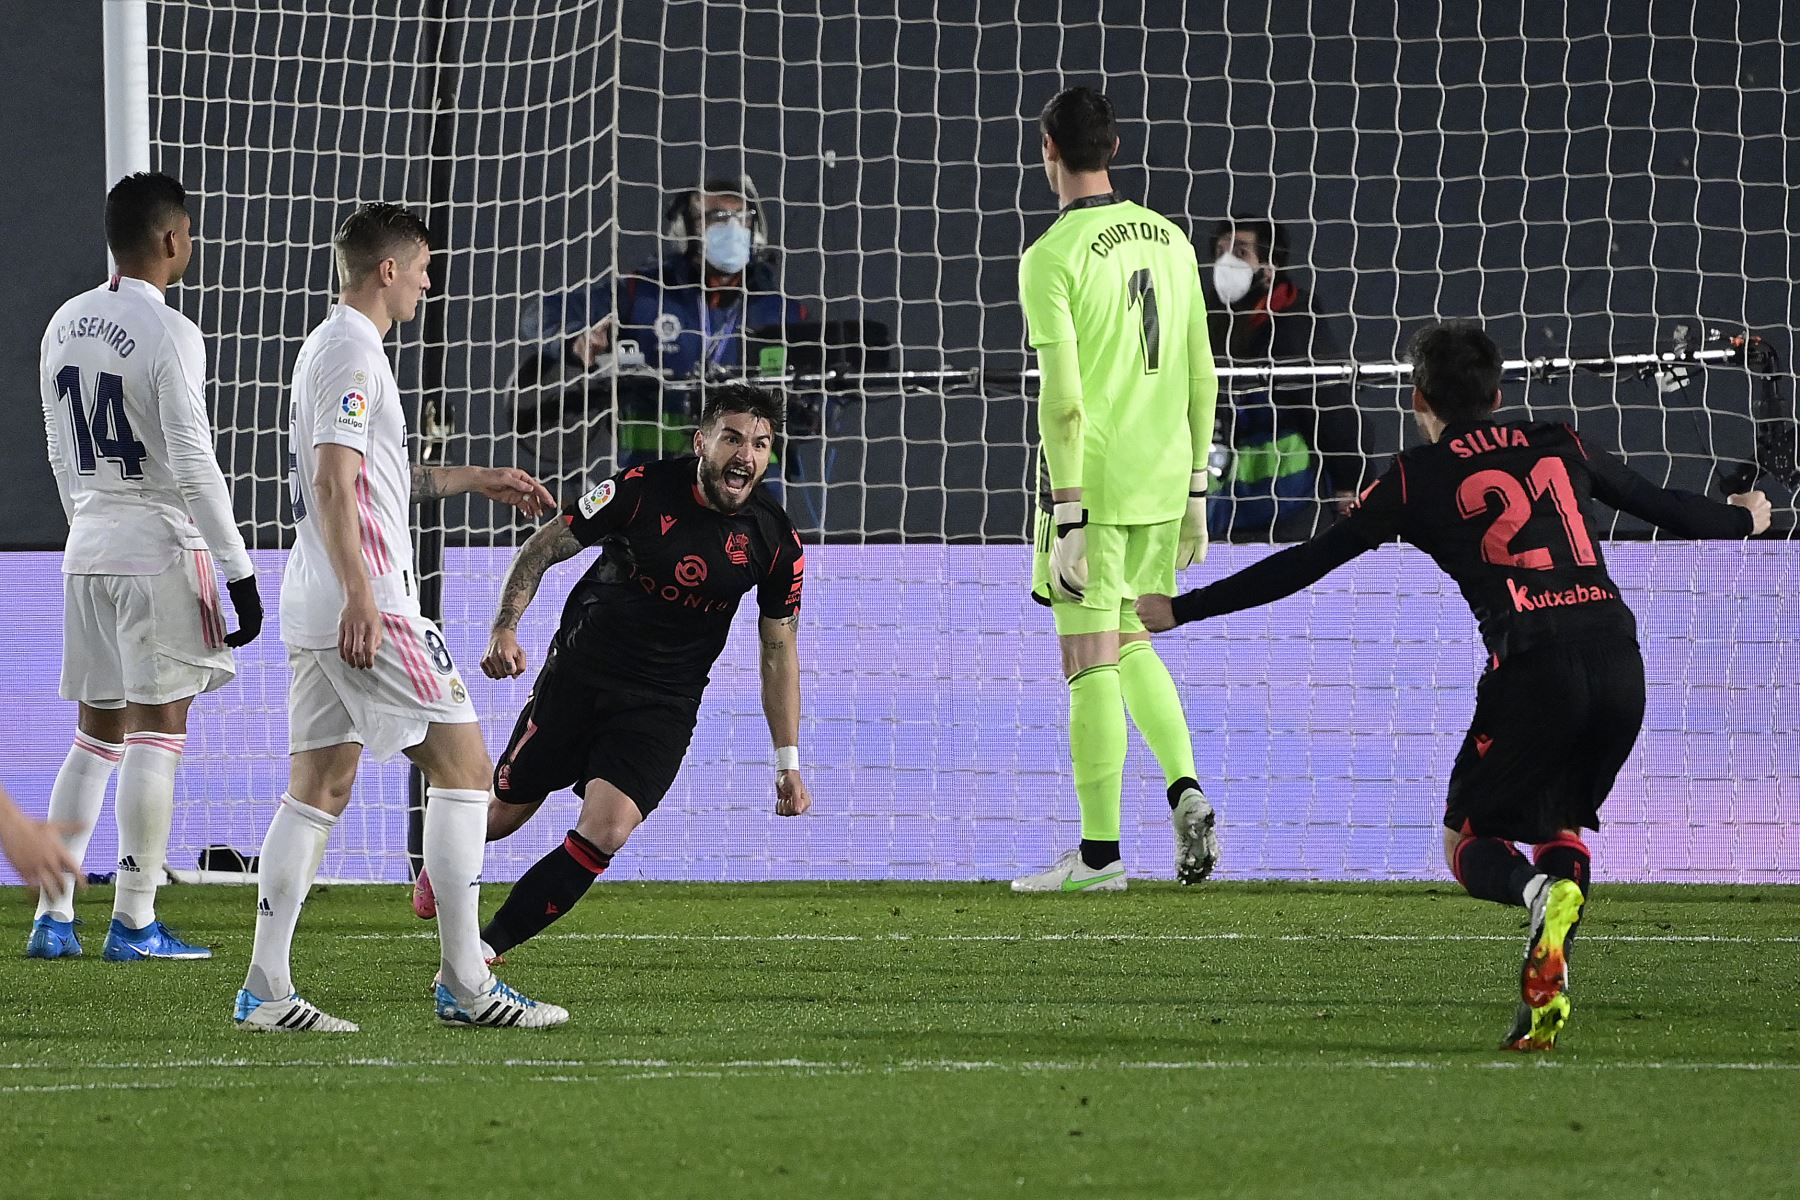 El centrocampista español de la Real Sociedad Portu celebra tras marcar un gol durante el partido de fútbol de la liga española entre el Real Madrid CF y la Real Sociedad.
Foto: AFP